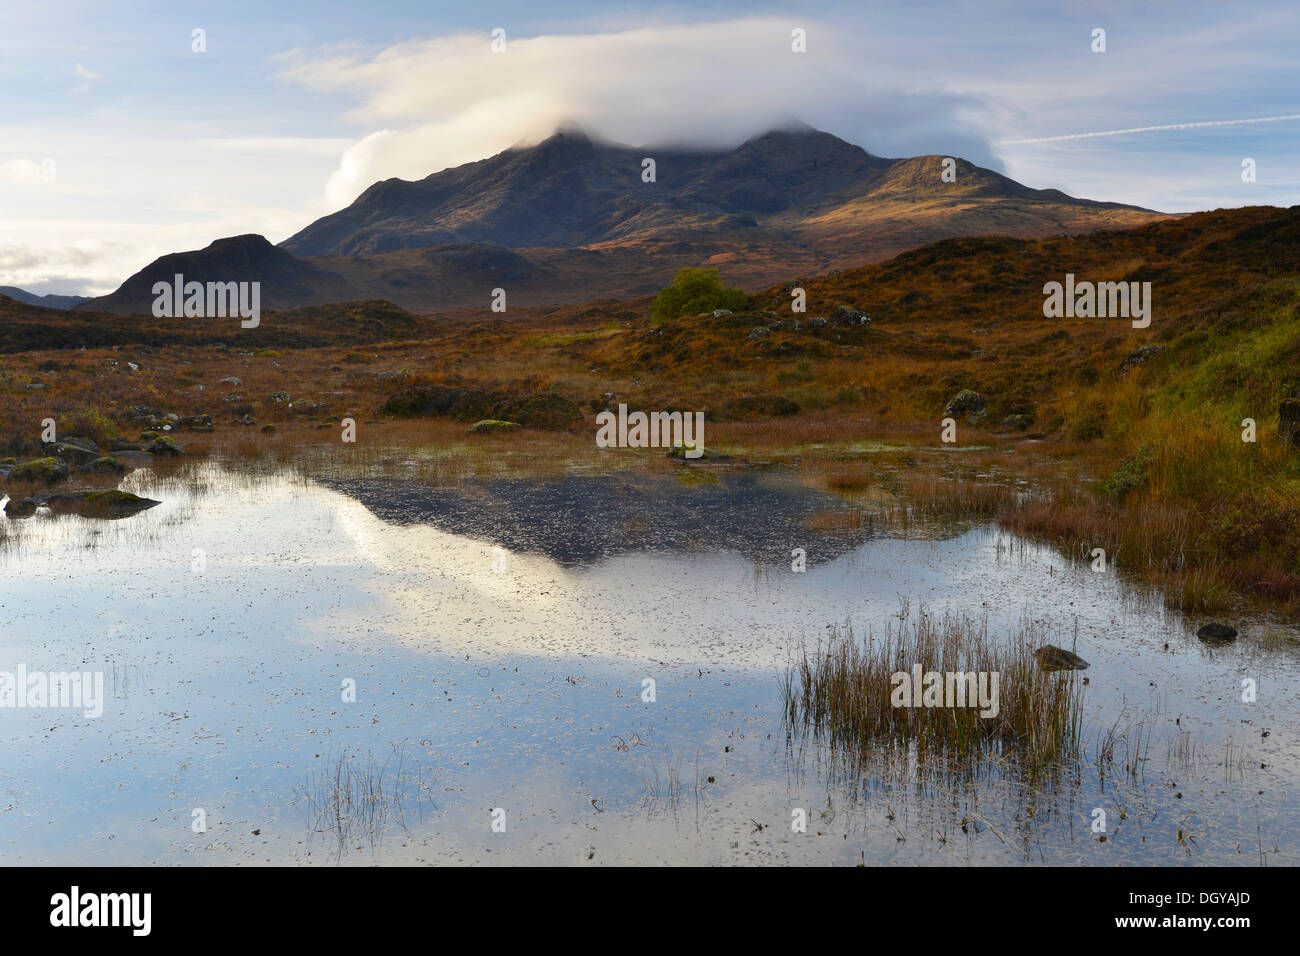 Piccolo lago di fronte al nero monti Cullins, Sligachan, Isola di Skye in Scozia, Regno Unito, Europa Foto Stock